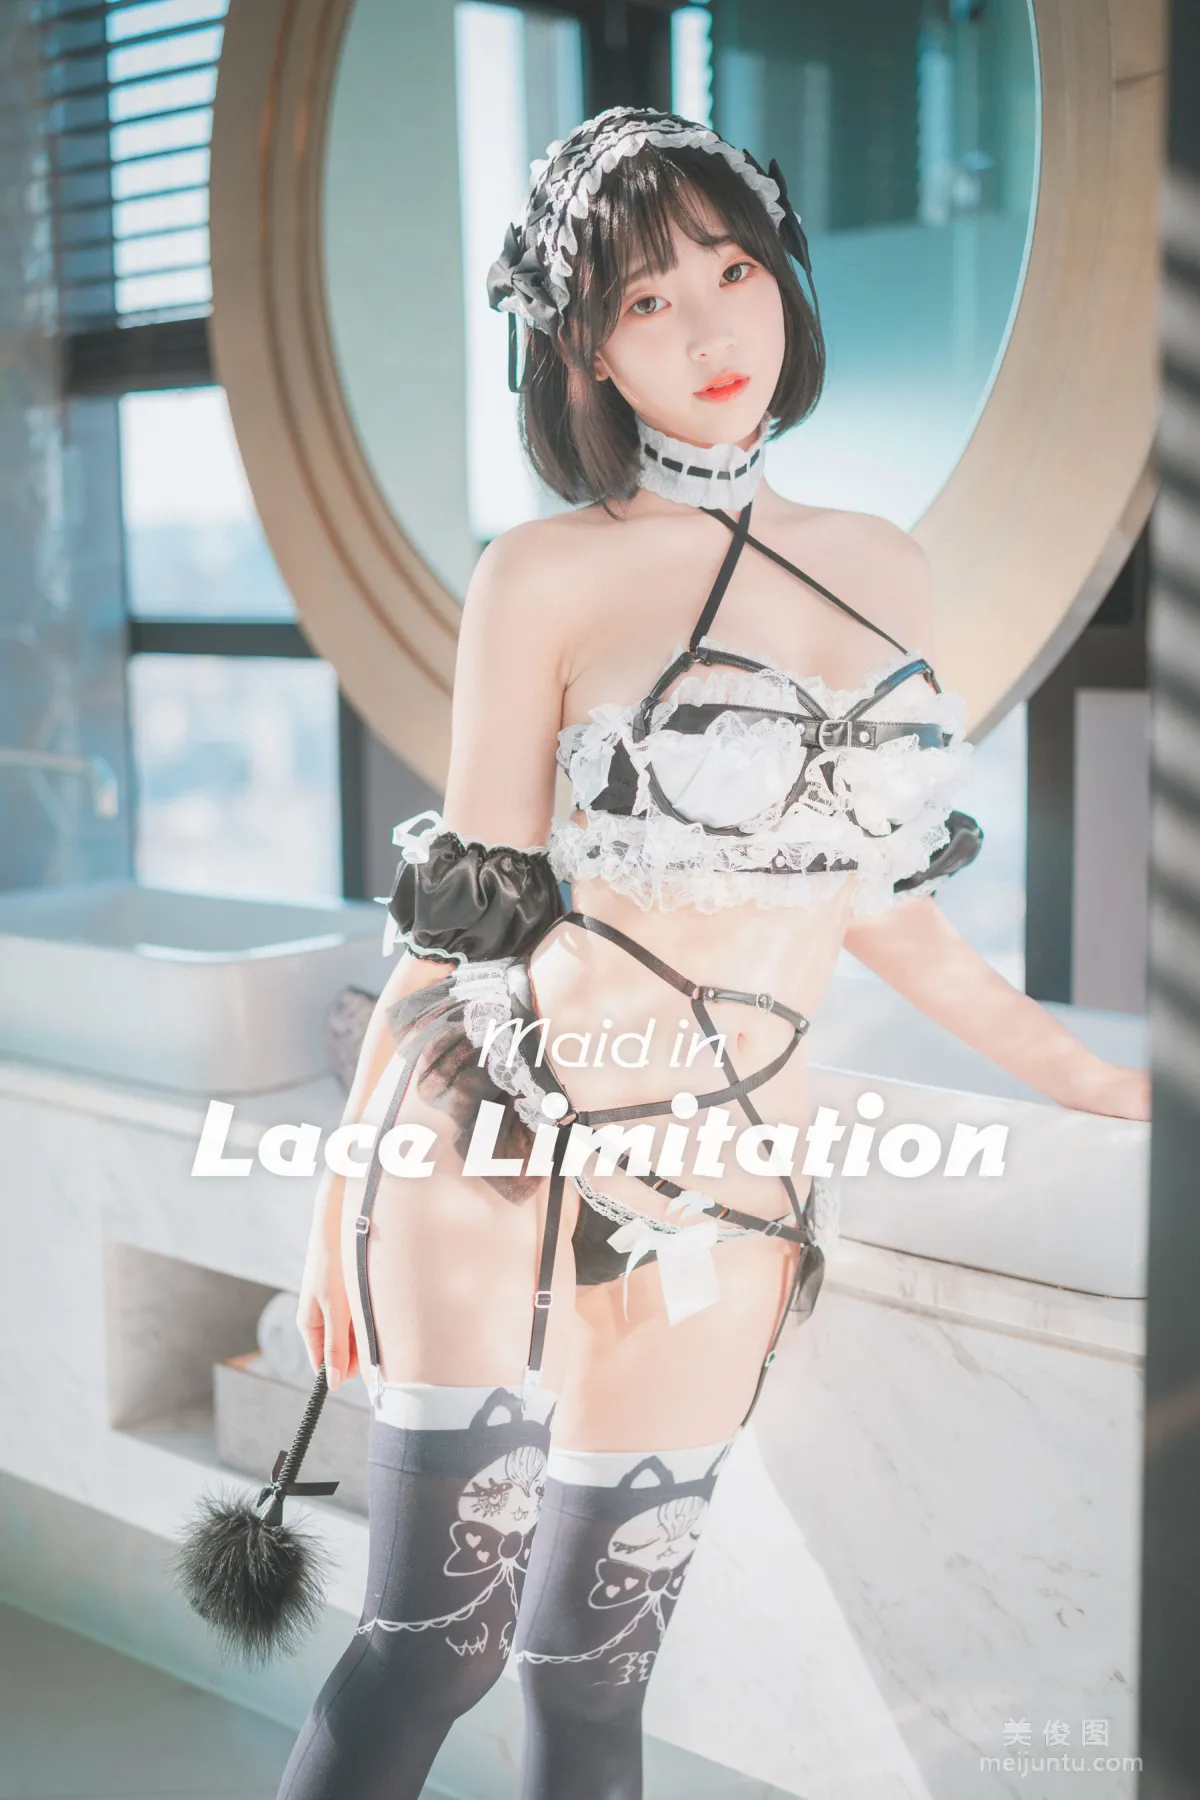 [DJAWA]  Kang Inkyung - Maid in Lace Limitation 写真套图1